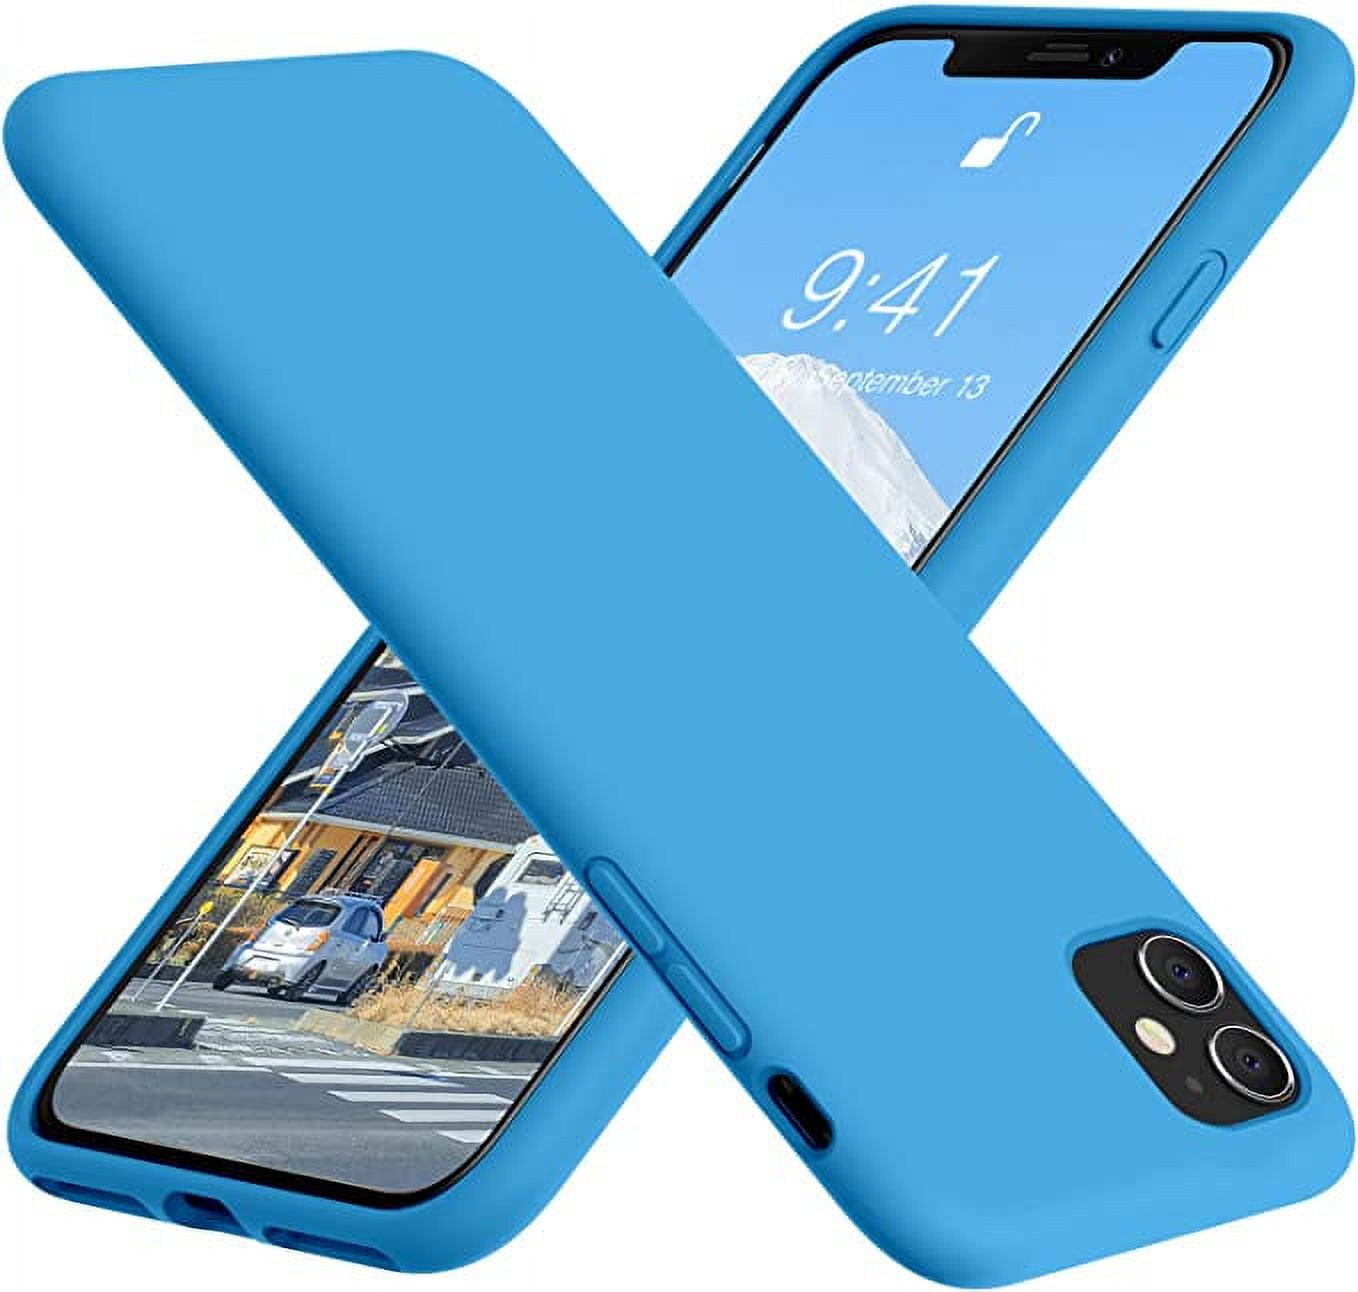 Iphone 11 - Silicone Case - Comprar en Entiendados